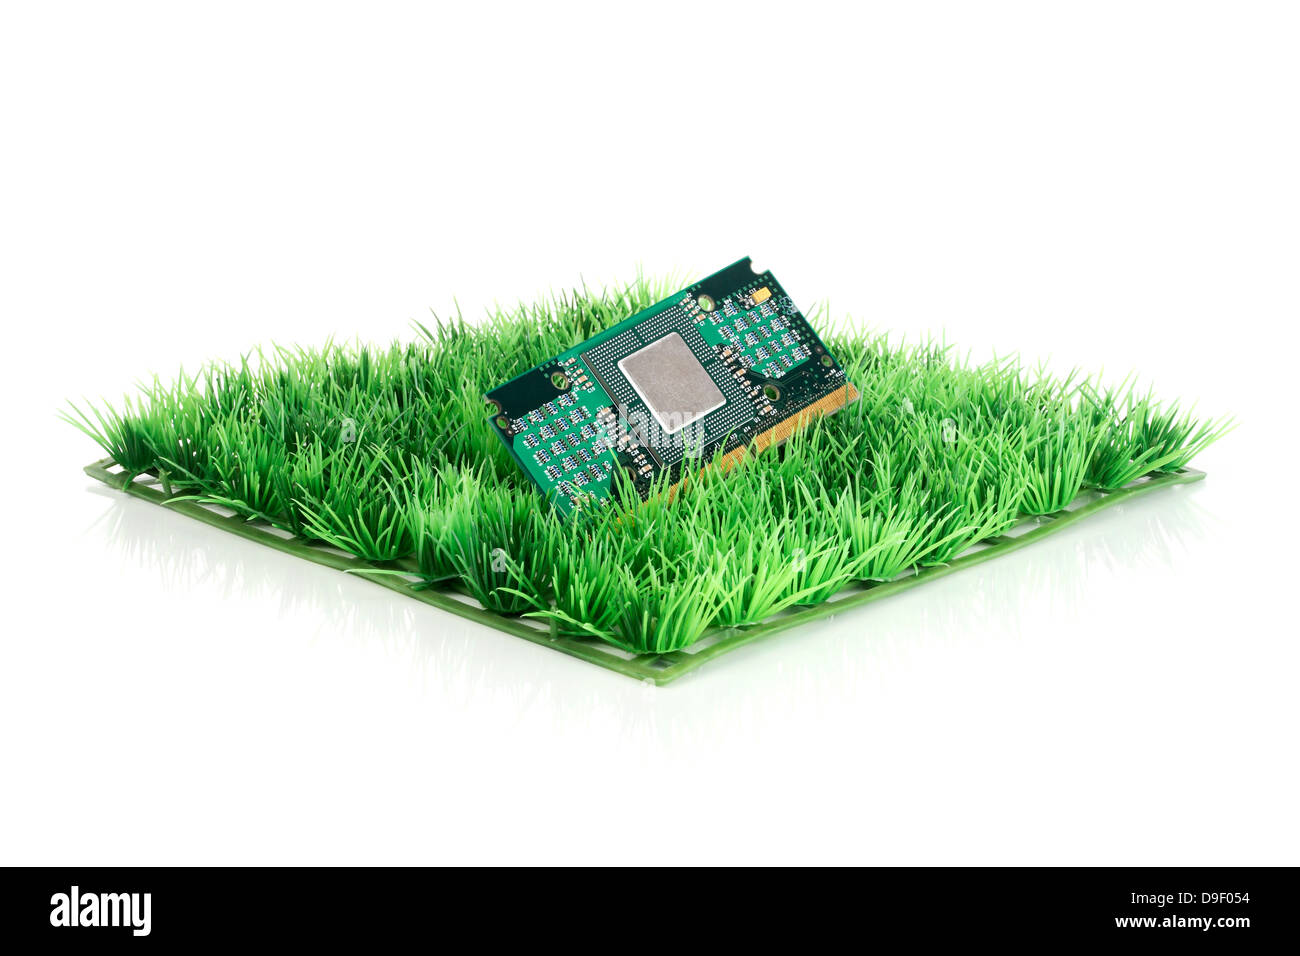 Per platino con processore di base sul prato di arte scheda con socket di processore in erba sintetica Foto Stock